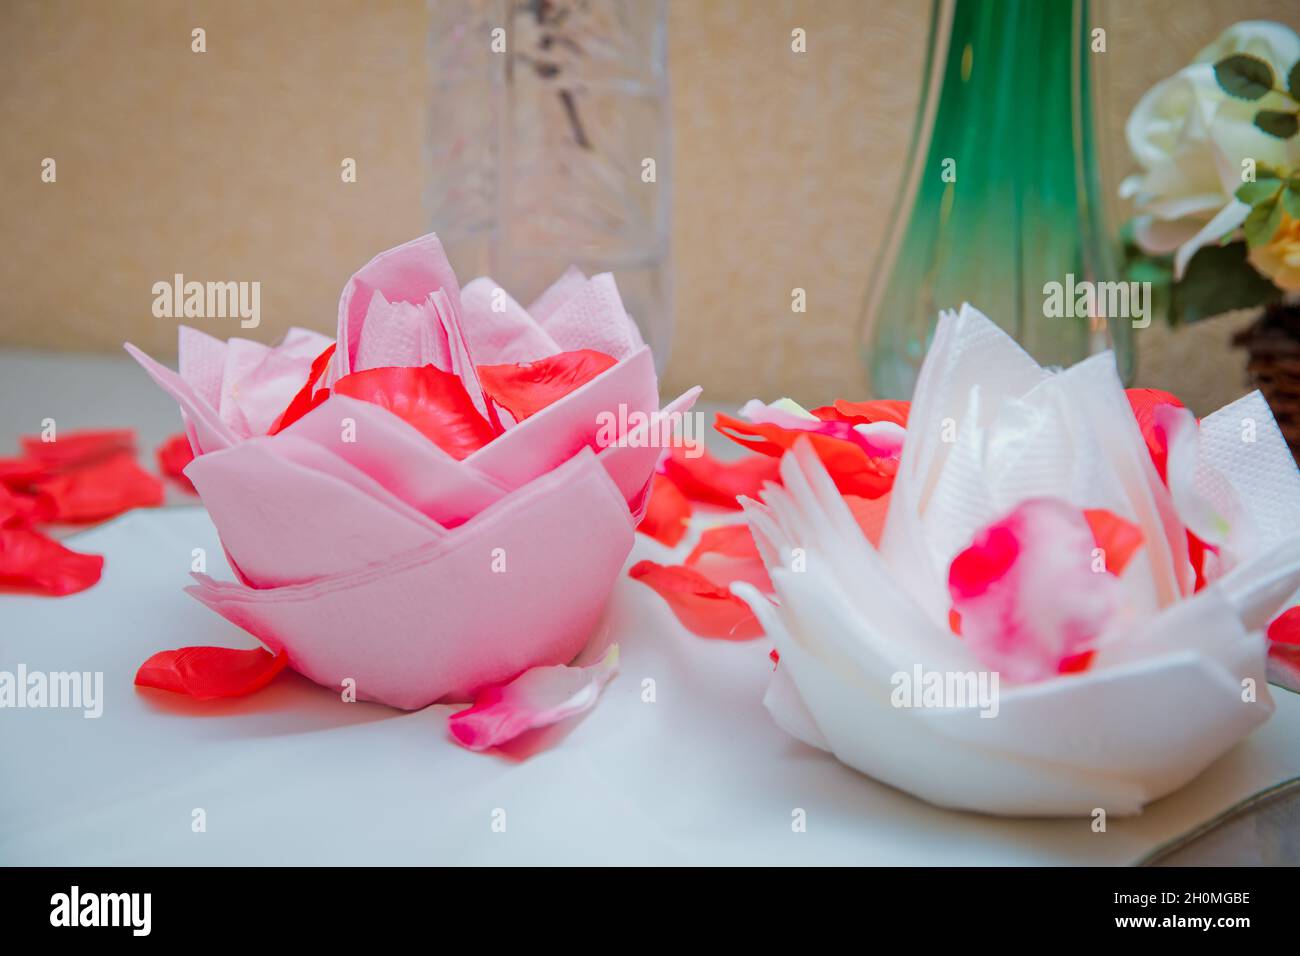 Weiße und rosa Blüten auf Servietten. Schöne Origami-Blume aus Serviette  auf weißem Hintergrund. Blütenblätter einer roten Rose Stockfotografie -  Alamy